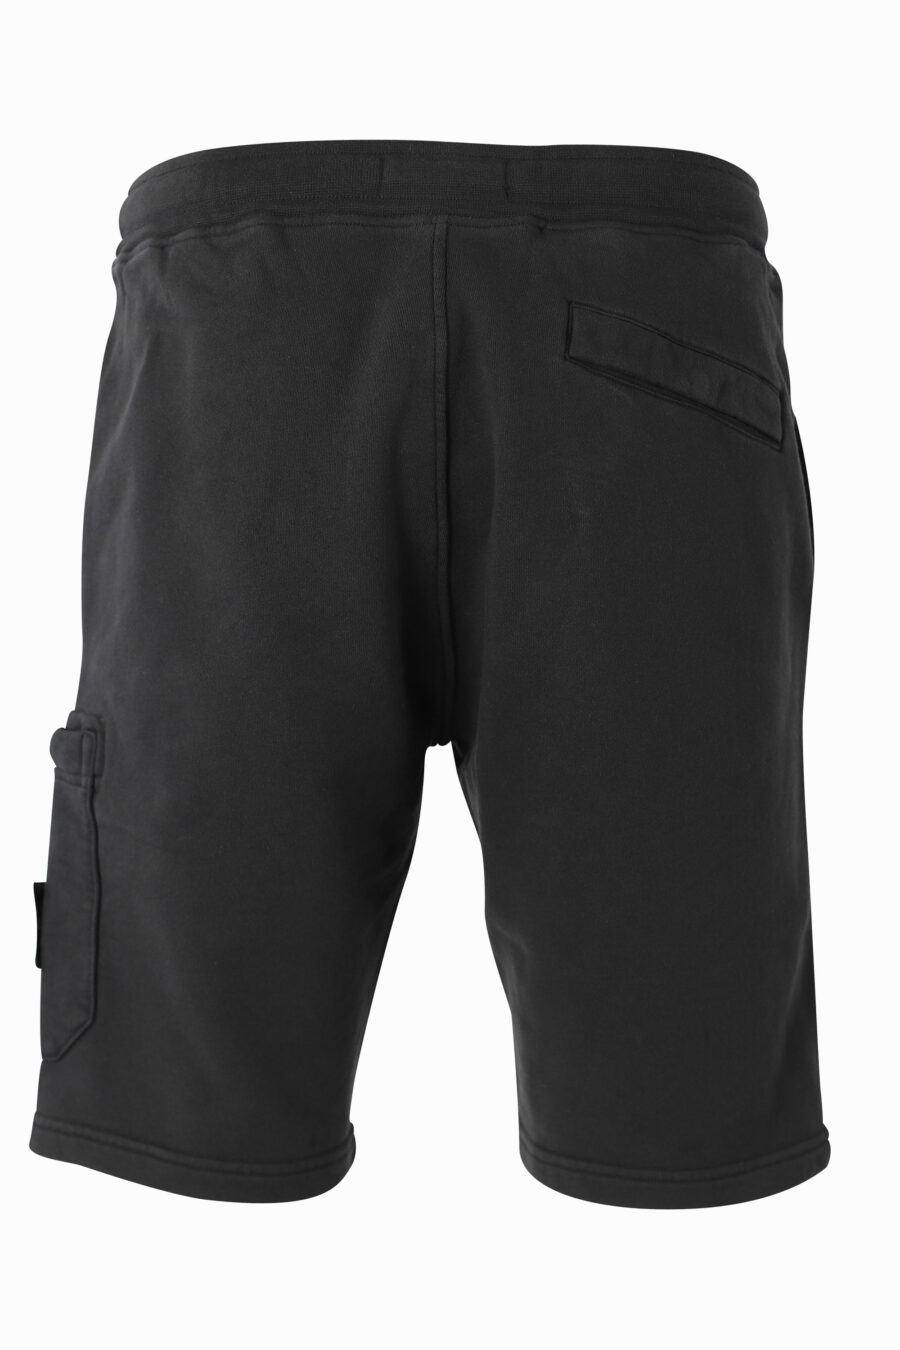 Schwarze Shorts mit seitlichem Aufnäher - IMG 1014